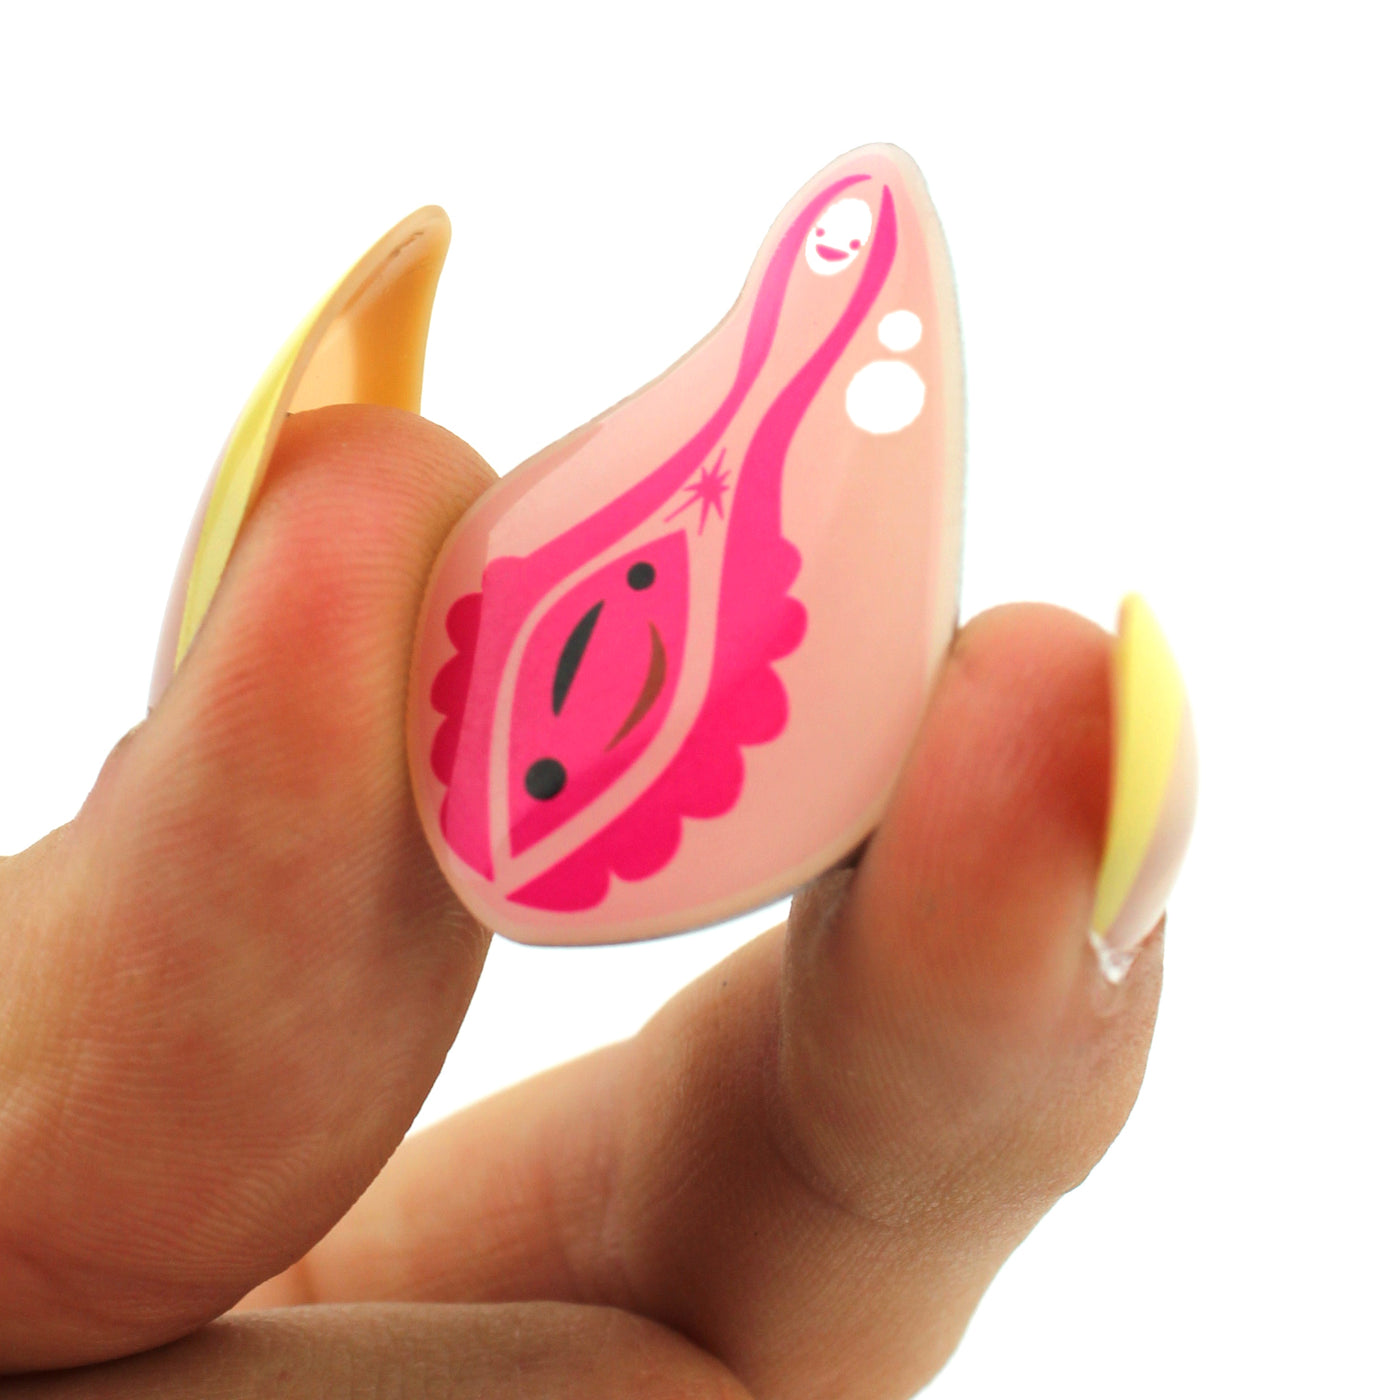 Vagina + Vulva Lapel Pin | Cute Vagina & Vulva Enamel Pin | Anatomical Vulva Pin - Vagina Pin Badge Reel Lanyard - OBGYN pins and gifts